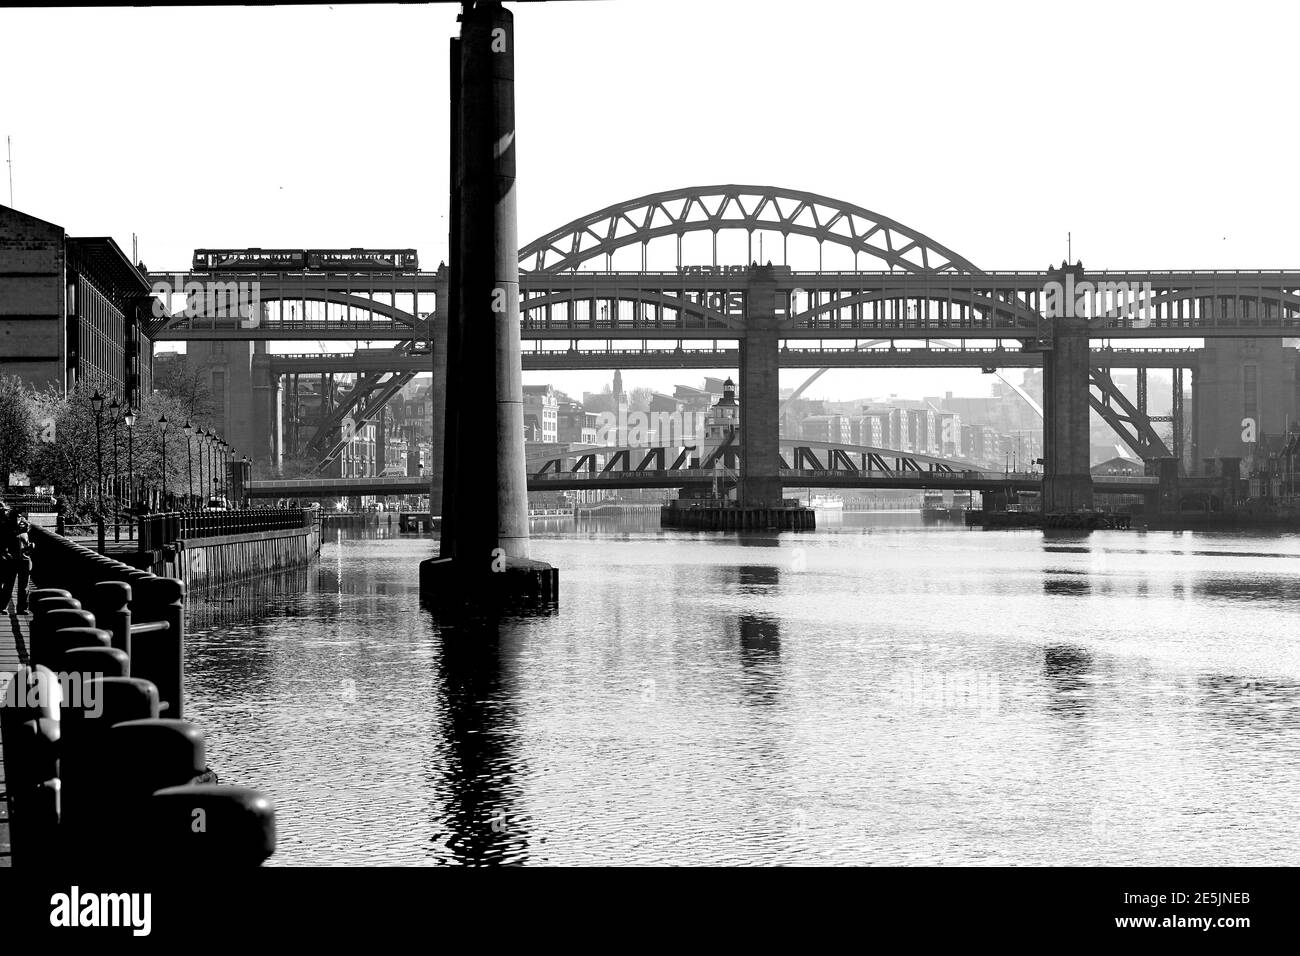 Newcastle Upon Tyne, Tyneside, North East England, UK Stock Photo